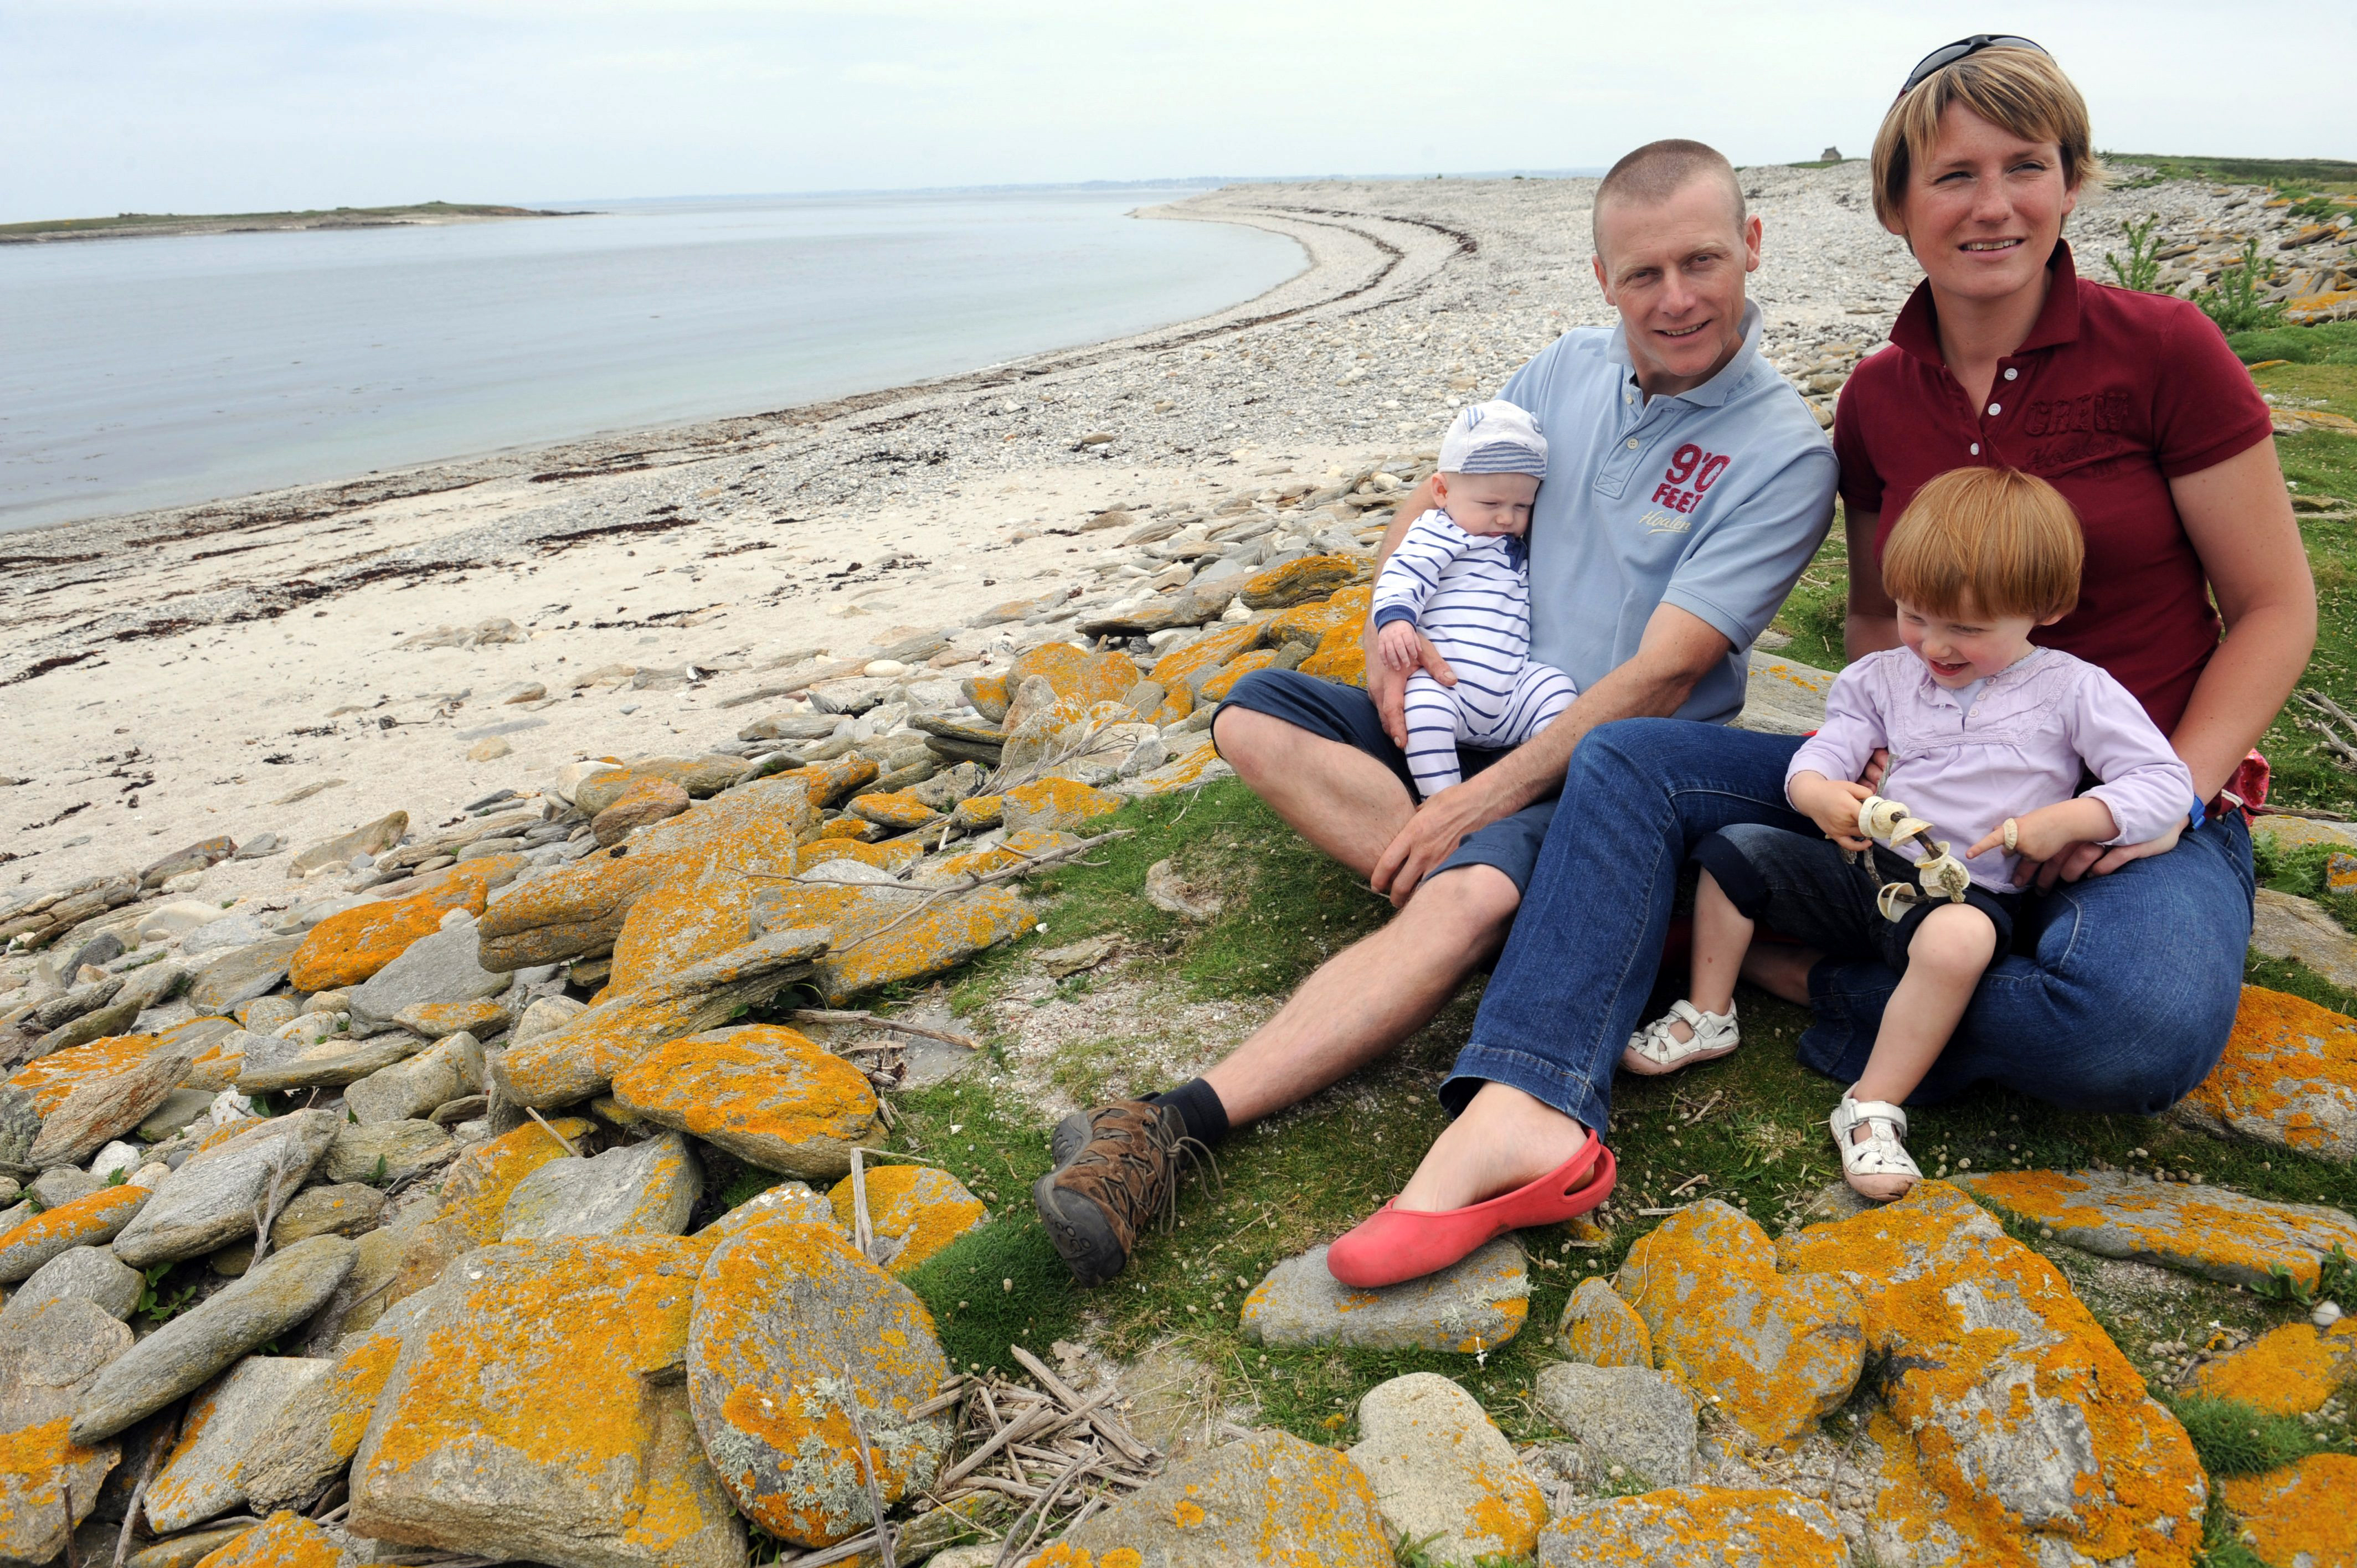 A Cuisnier-házaspár és gyermekeik 2012-ben, a szigeten töltött ötödik évükben.